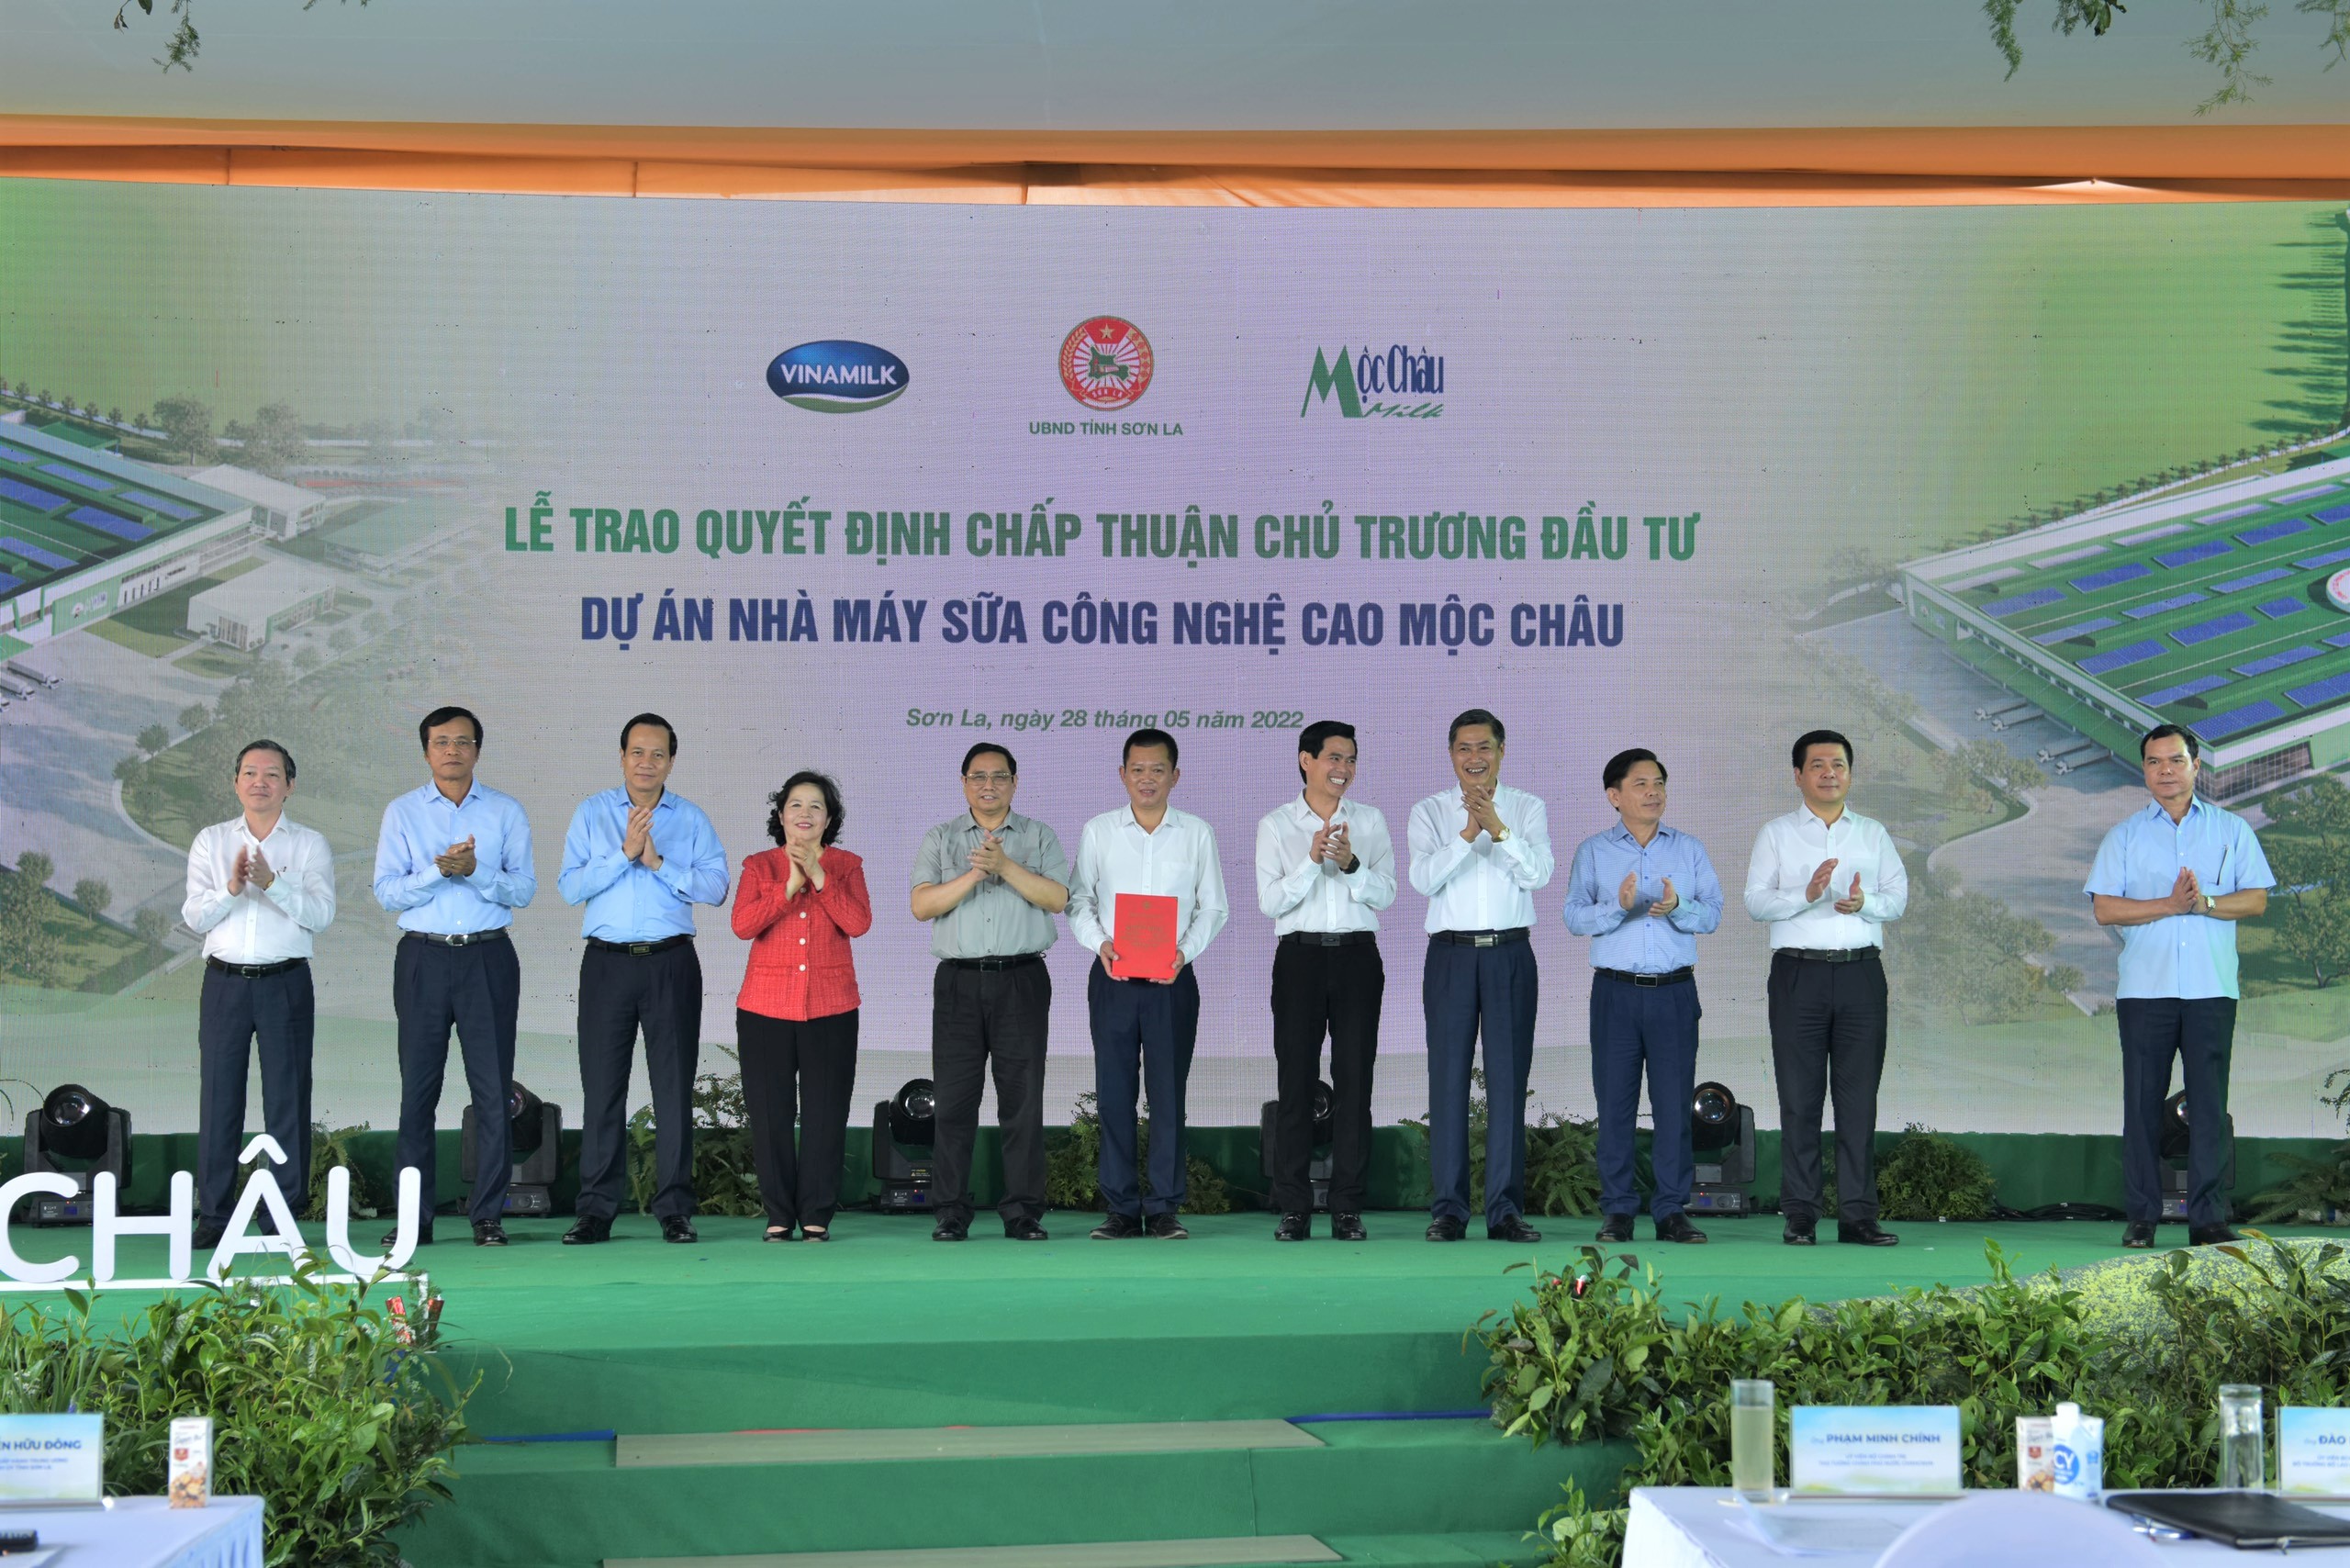 Ông Phạm Hải Nam (đứng giữa) – Tổng Giám đốc Mộc Châu Milk đại diện nhận Quyết định chấp thuận chủ trương đầu tư cho hạng mục “Nhà máy sữa công nghệ cao Mộc Châu” từ lãnh đạo Tỉnh Sơn La.